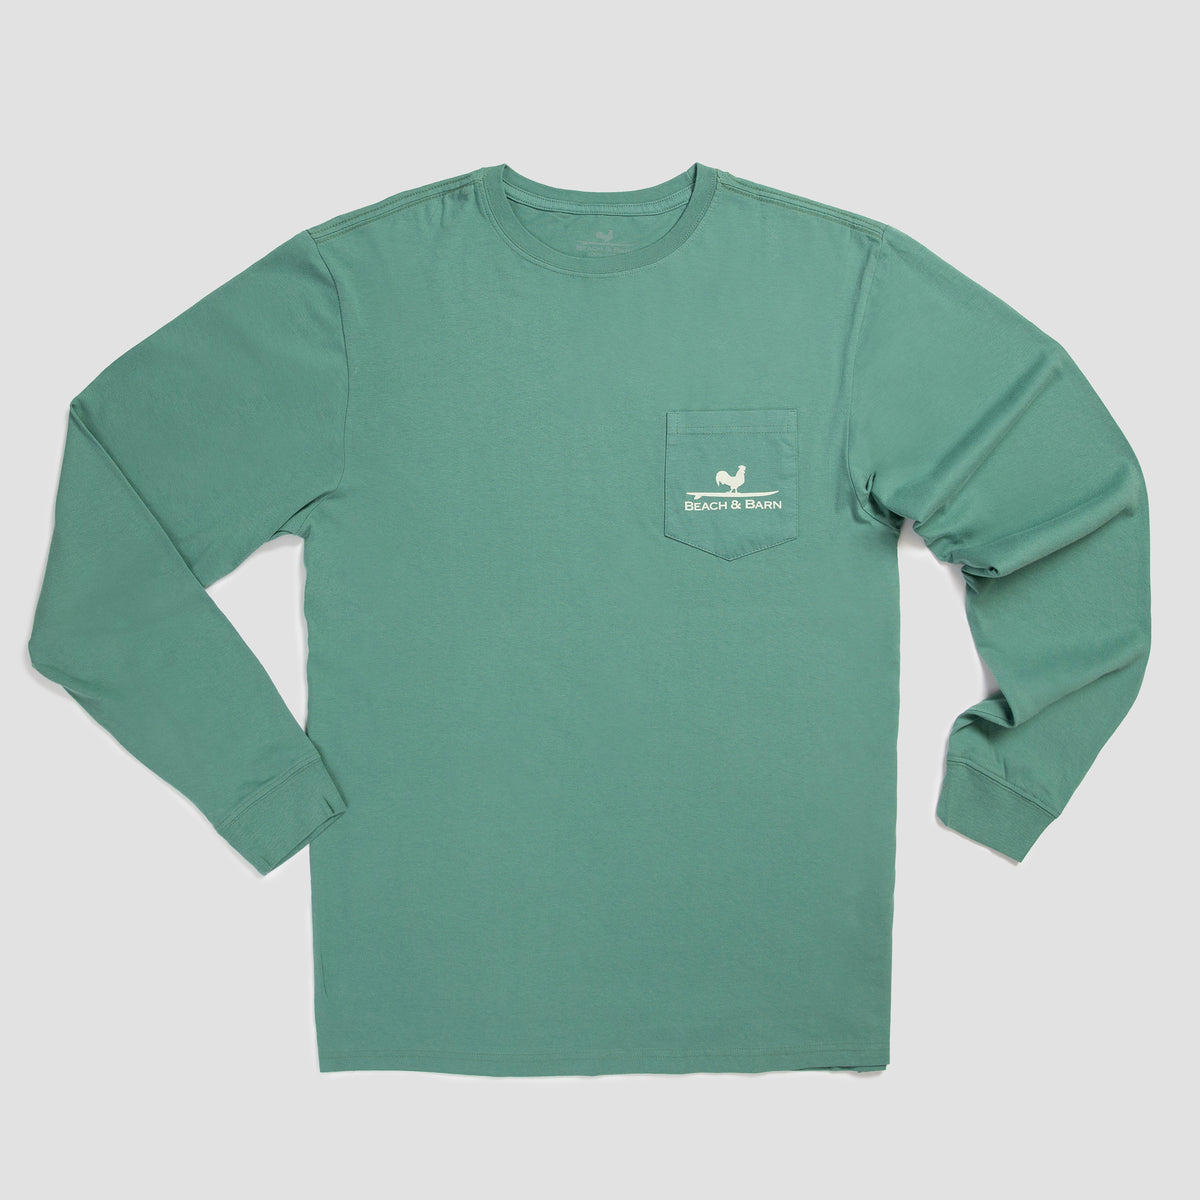 Sale - Beach &amp; Barn State Park Long Sleeve Tee Shirt